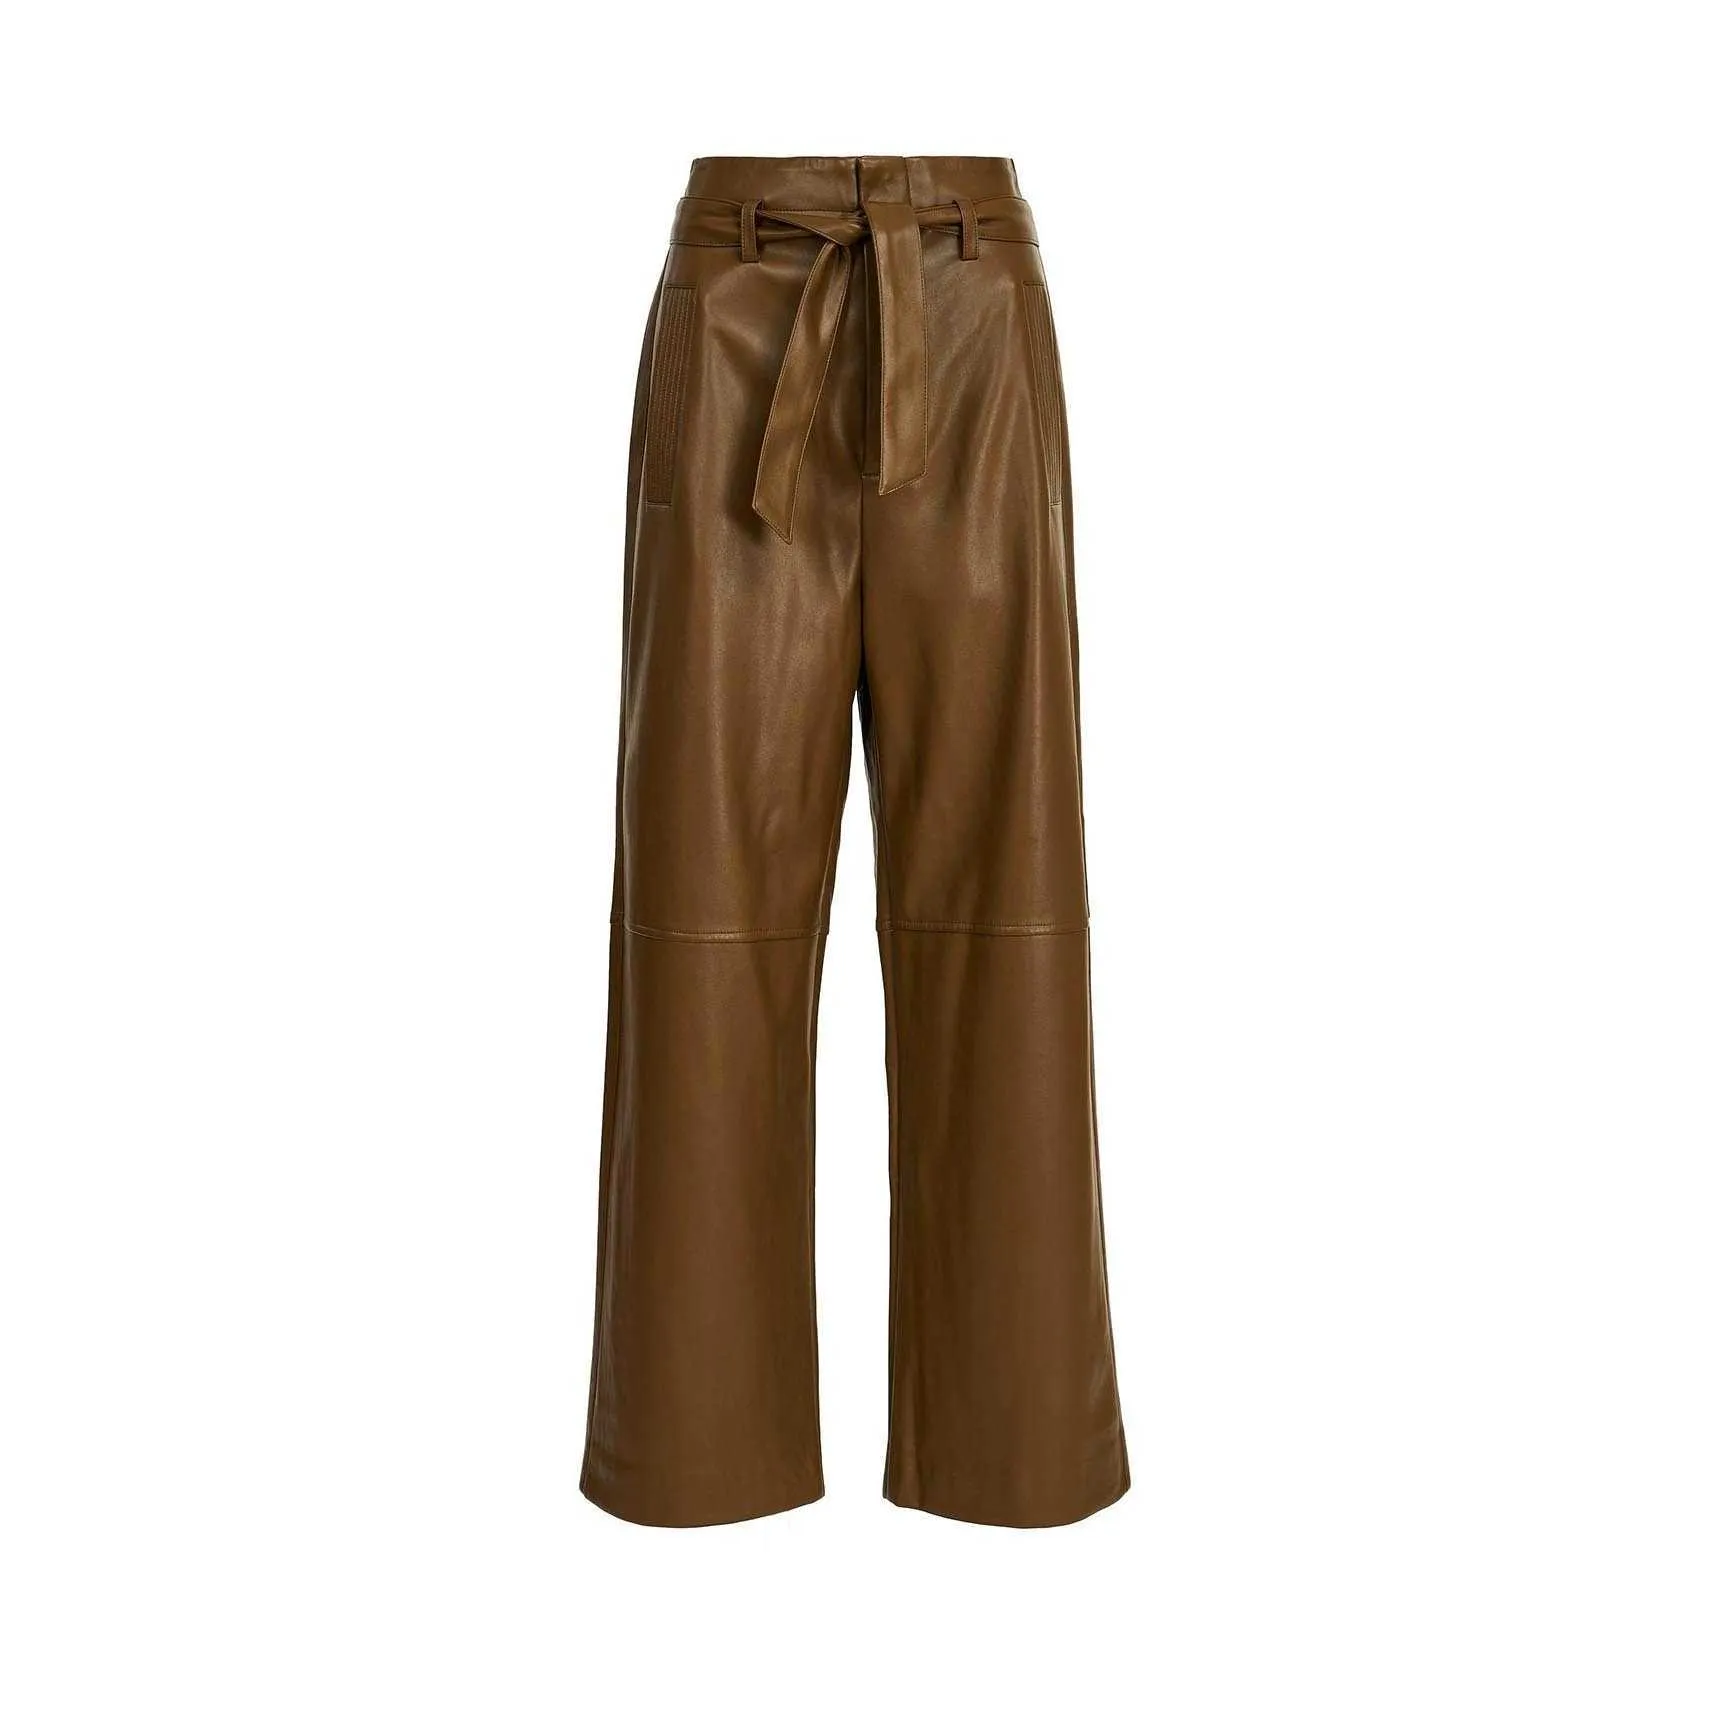 Metaïsche bruine glanzende leggings voor vrouwen met hoge taille echt lederen lange broek gratis maten aangepaste ontwerpen